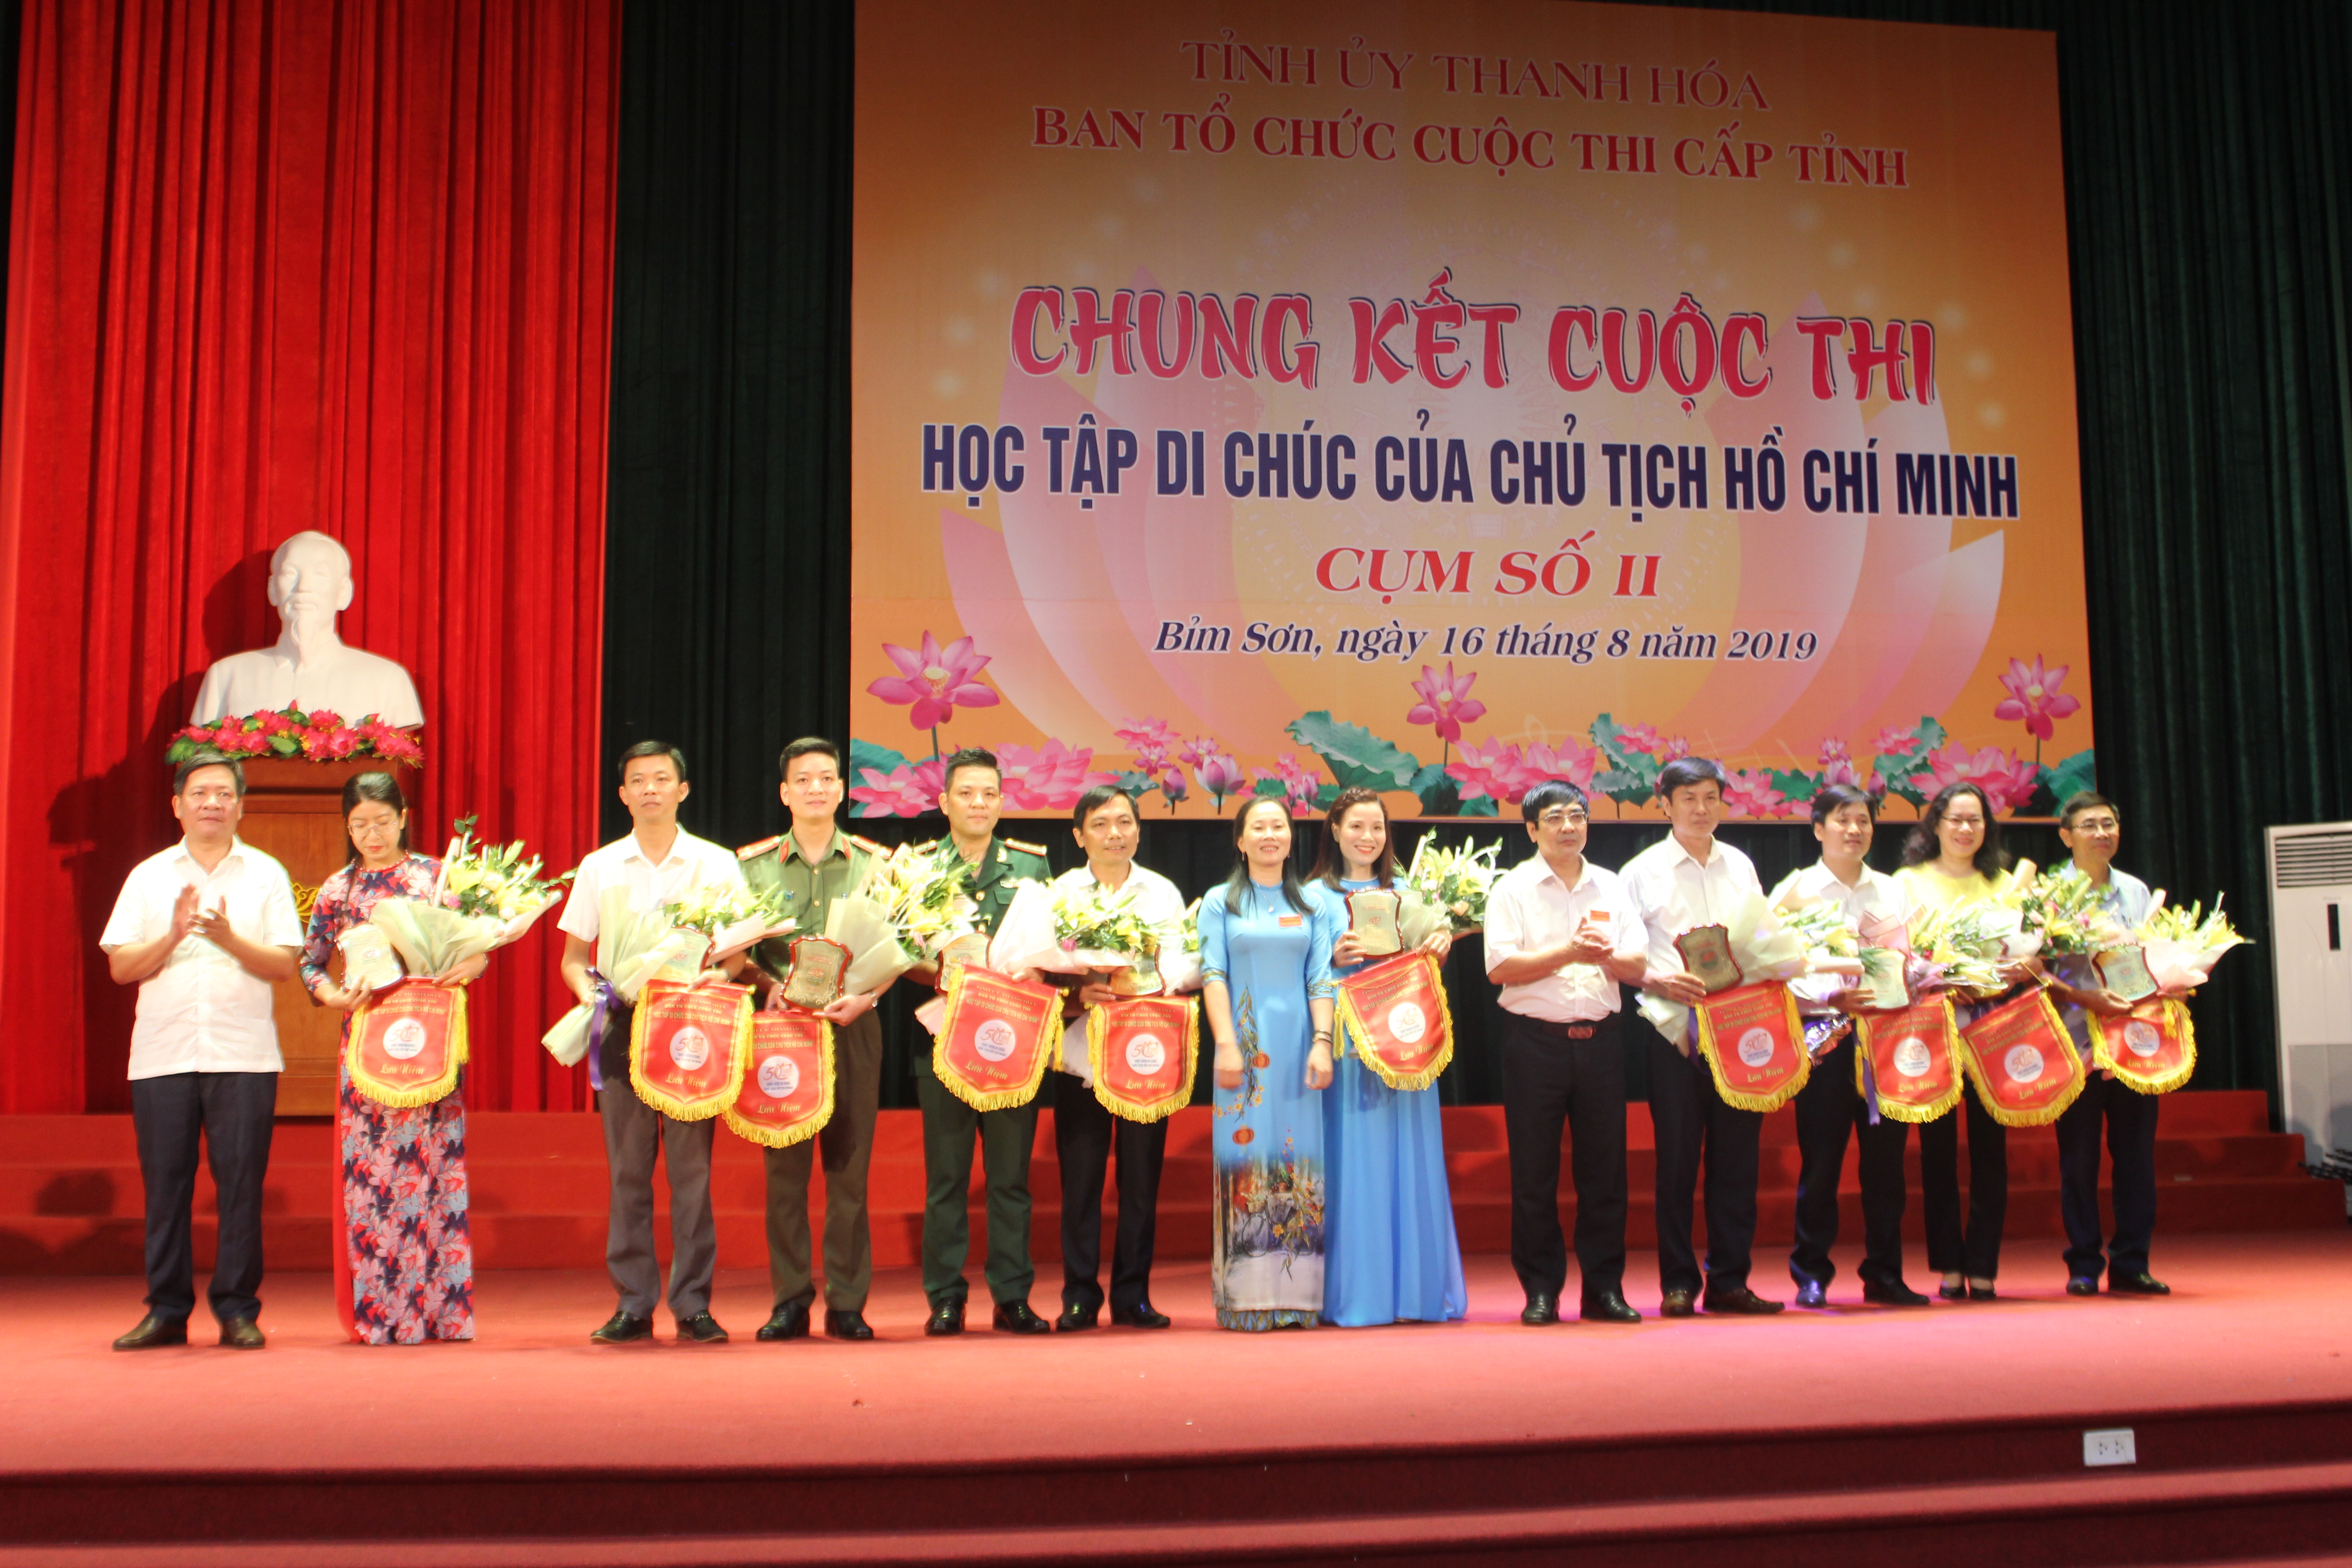 Chung kết Cuộc thi “Học tập Di chúc của Chủ tịch Hồ Chí Minh”, Cụm số II cấp tỉnh